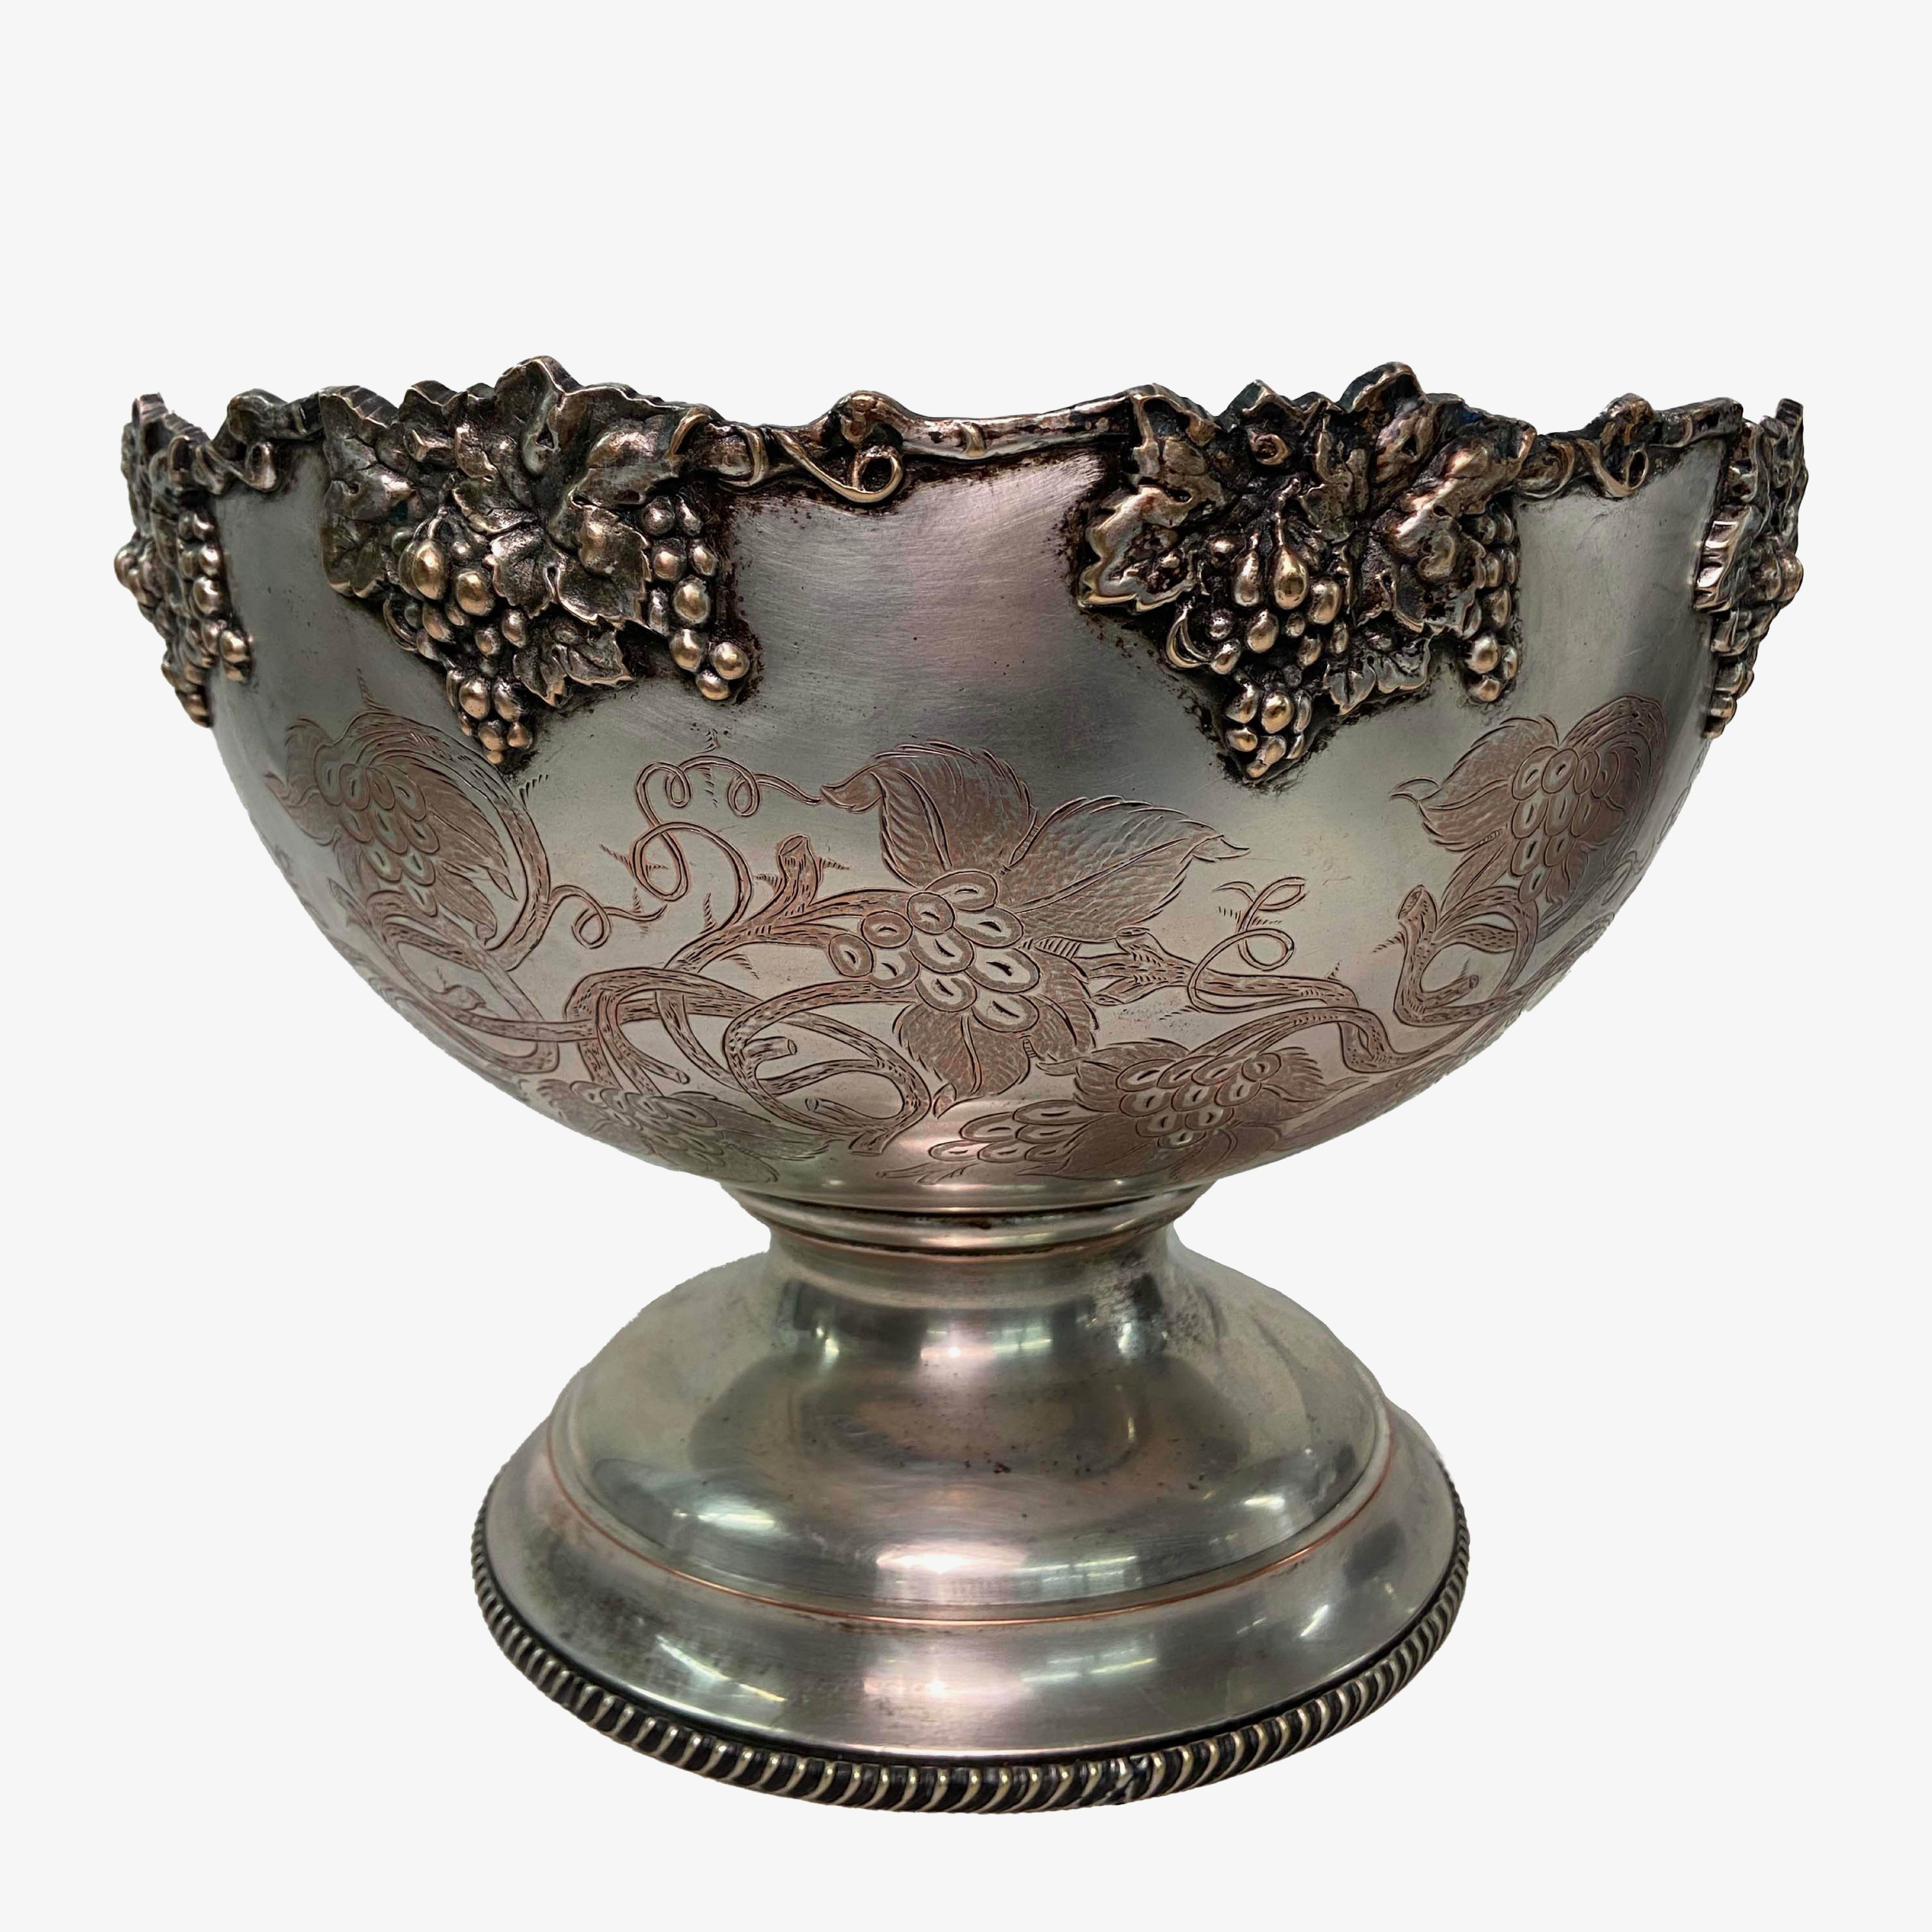 Cette coupe à champagne/punch en métal argenté antique présente une patine magnifiquement vieillie qui lui confère un attrait naturel et intemporel. Le bord extérieur est décoré de grandes grappes de raisin et de feuilles de vigne. Le fond de la